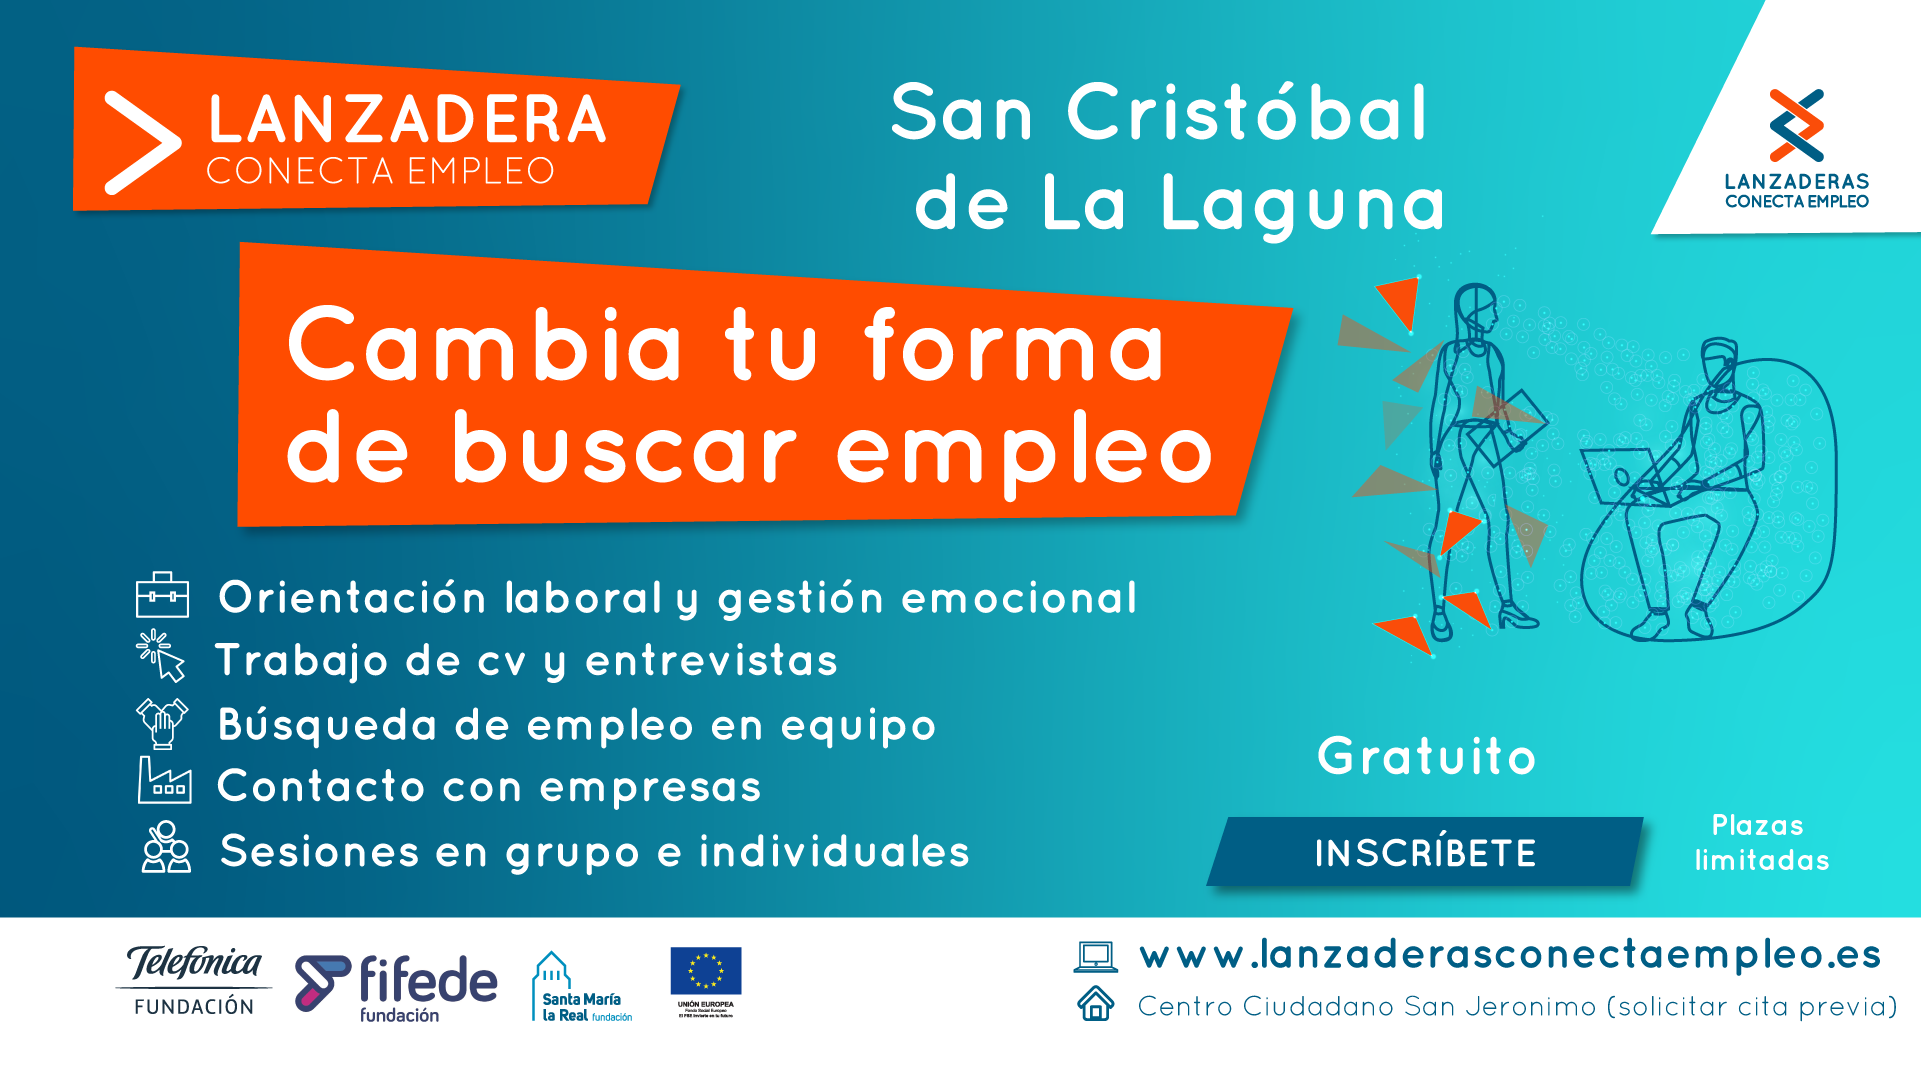 Cartel informativo de la Lanzadera Conecta Empleo de San Cristóbal de La Laguna